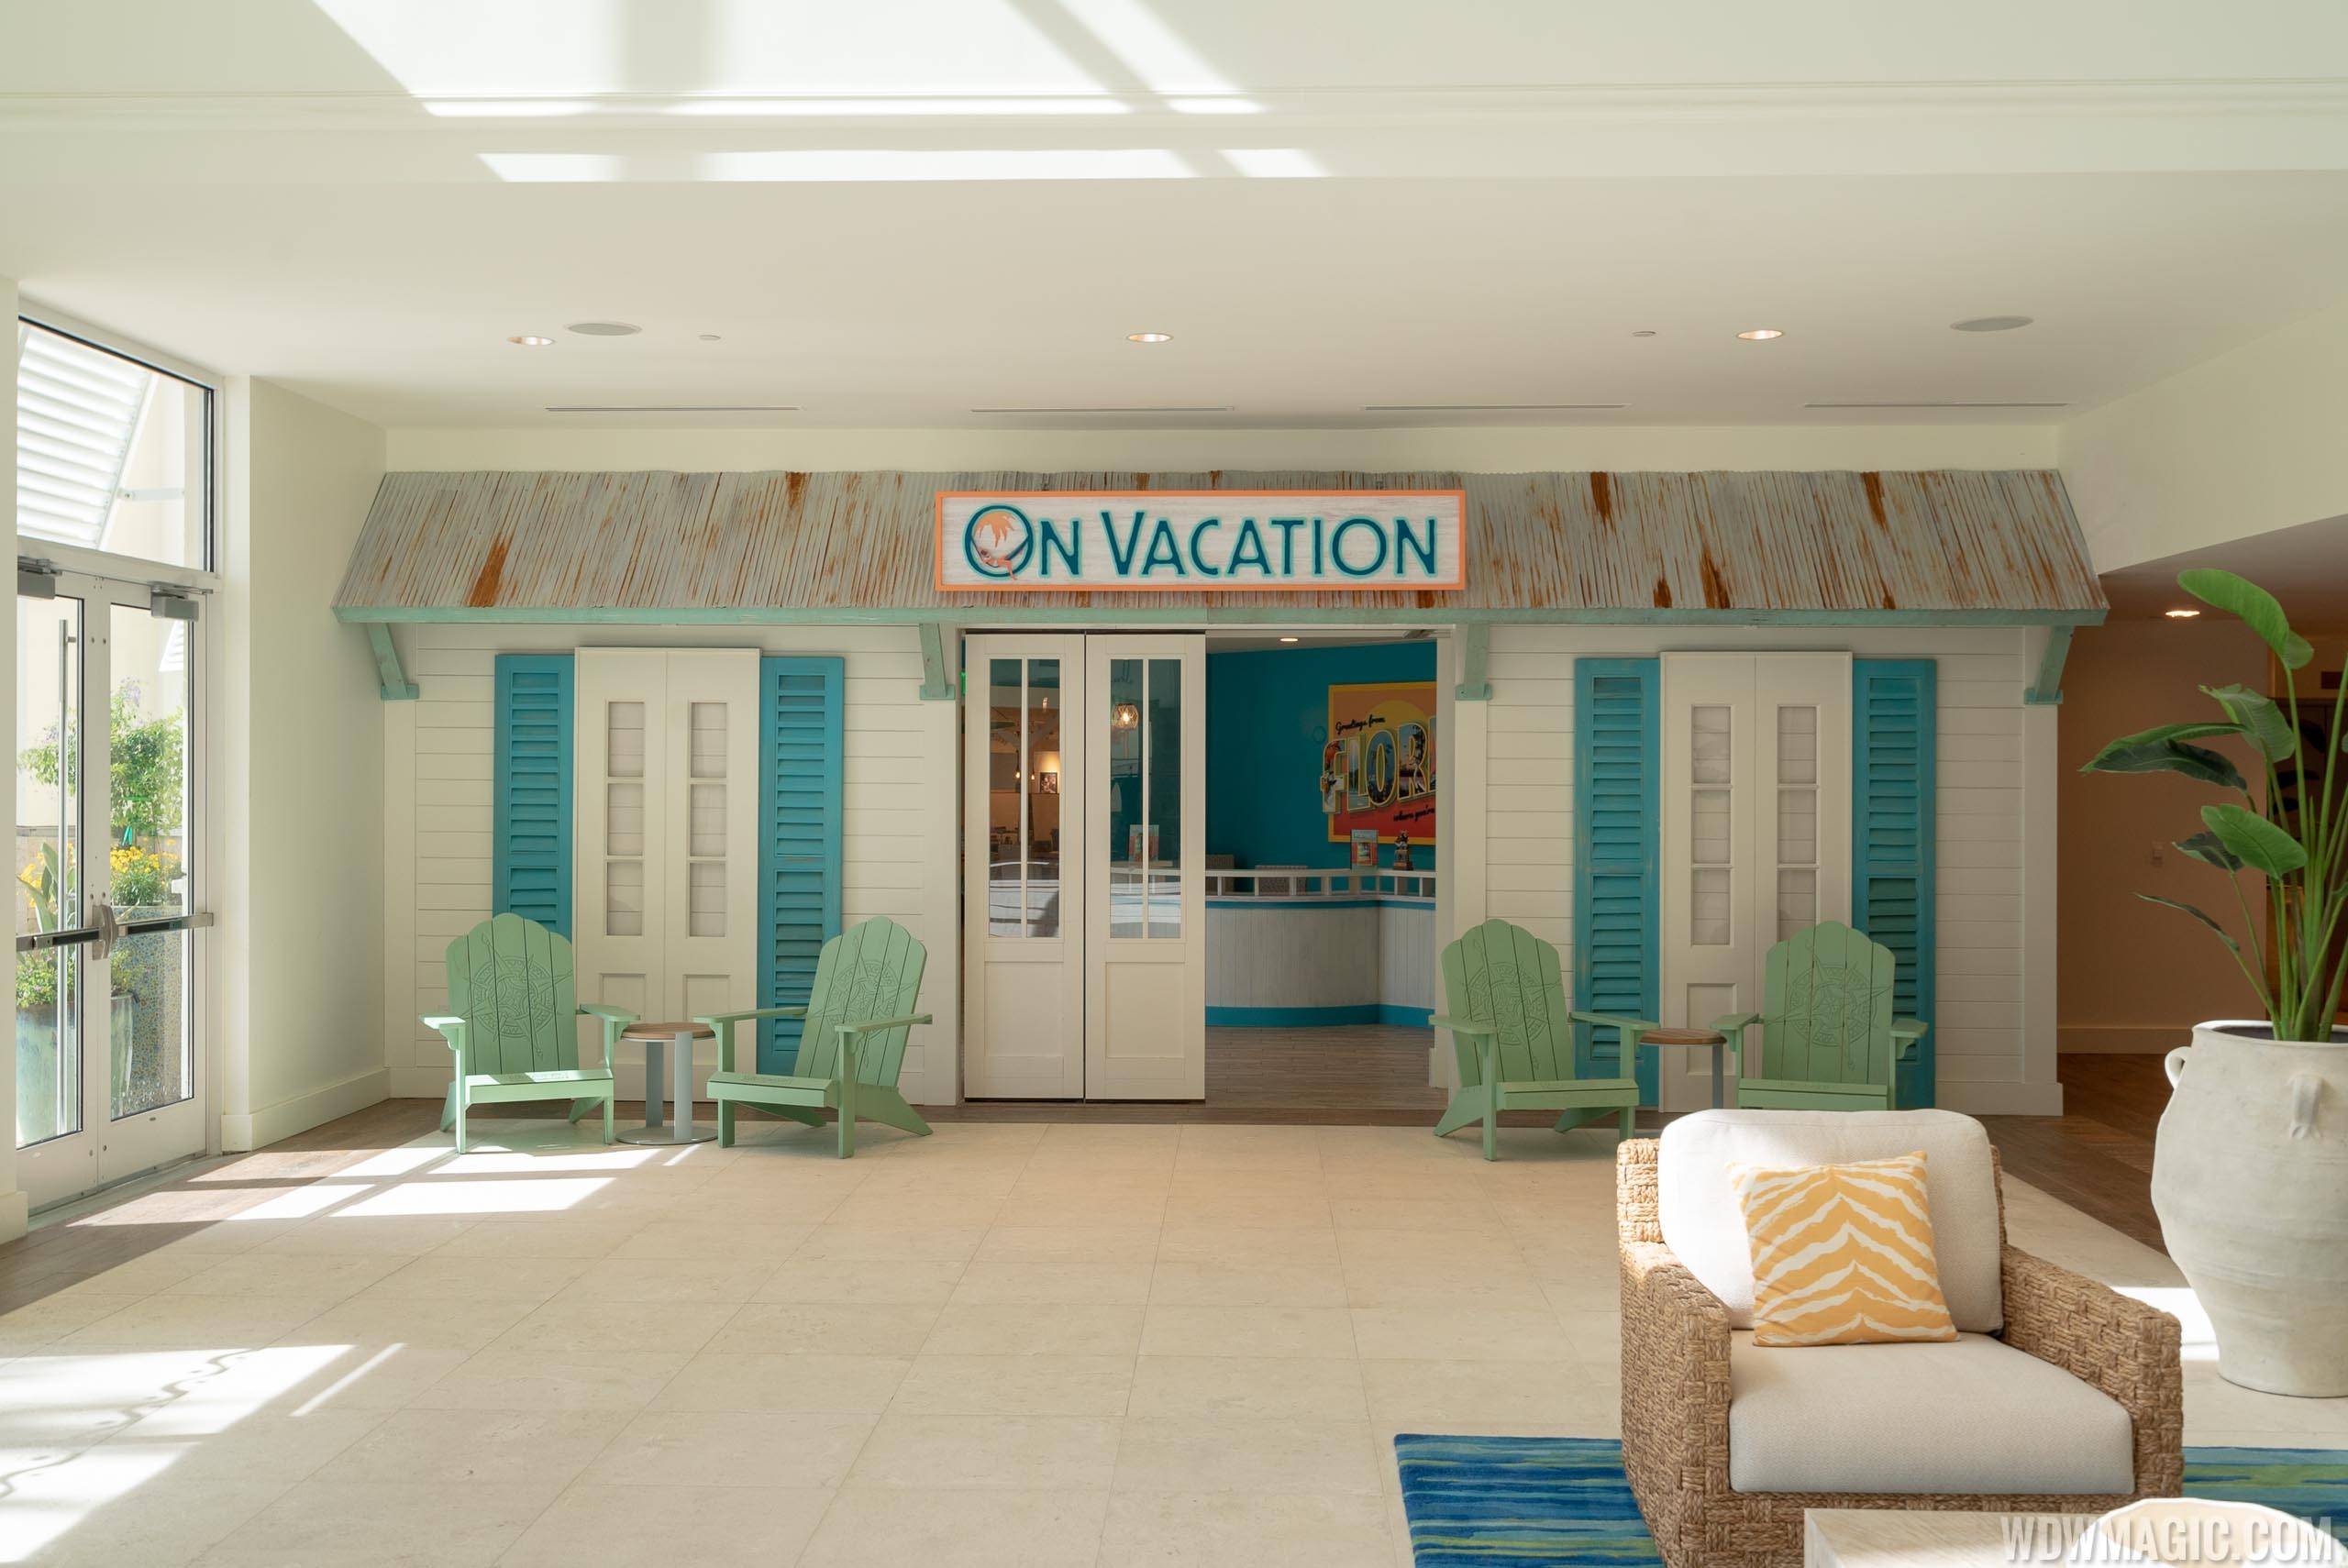 Margaritaville Resort Orlando - On Vacation Restaurant